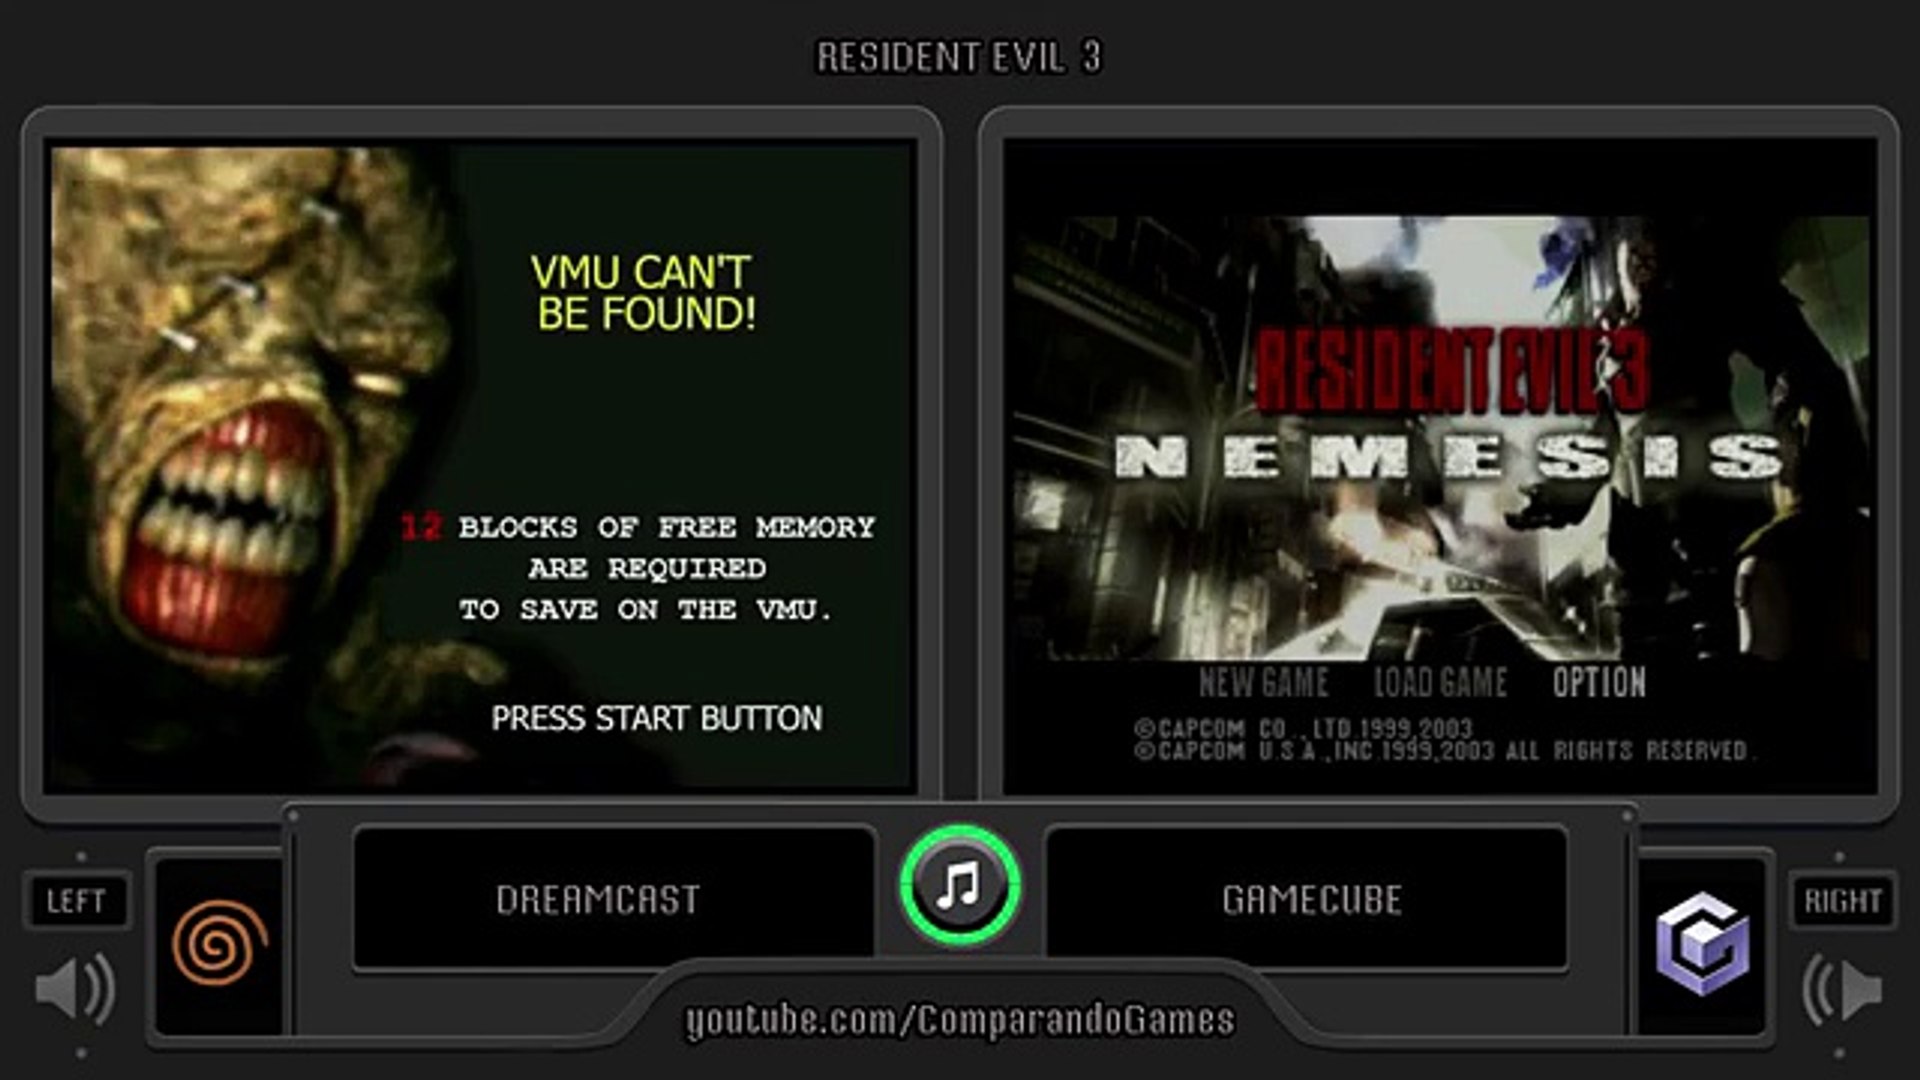 Resident Evil – Code Veronica (2000) Dreamcast vs PS2 vs GameCube vs PS3 vs  XBOX360 vs PS4/PRO vs PC 